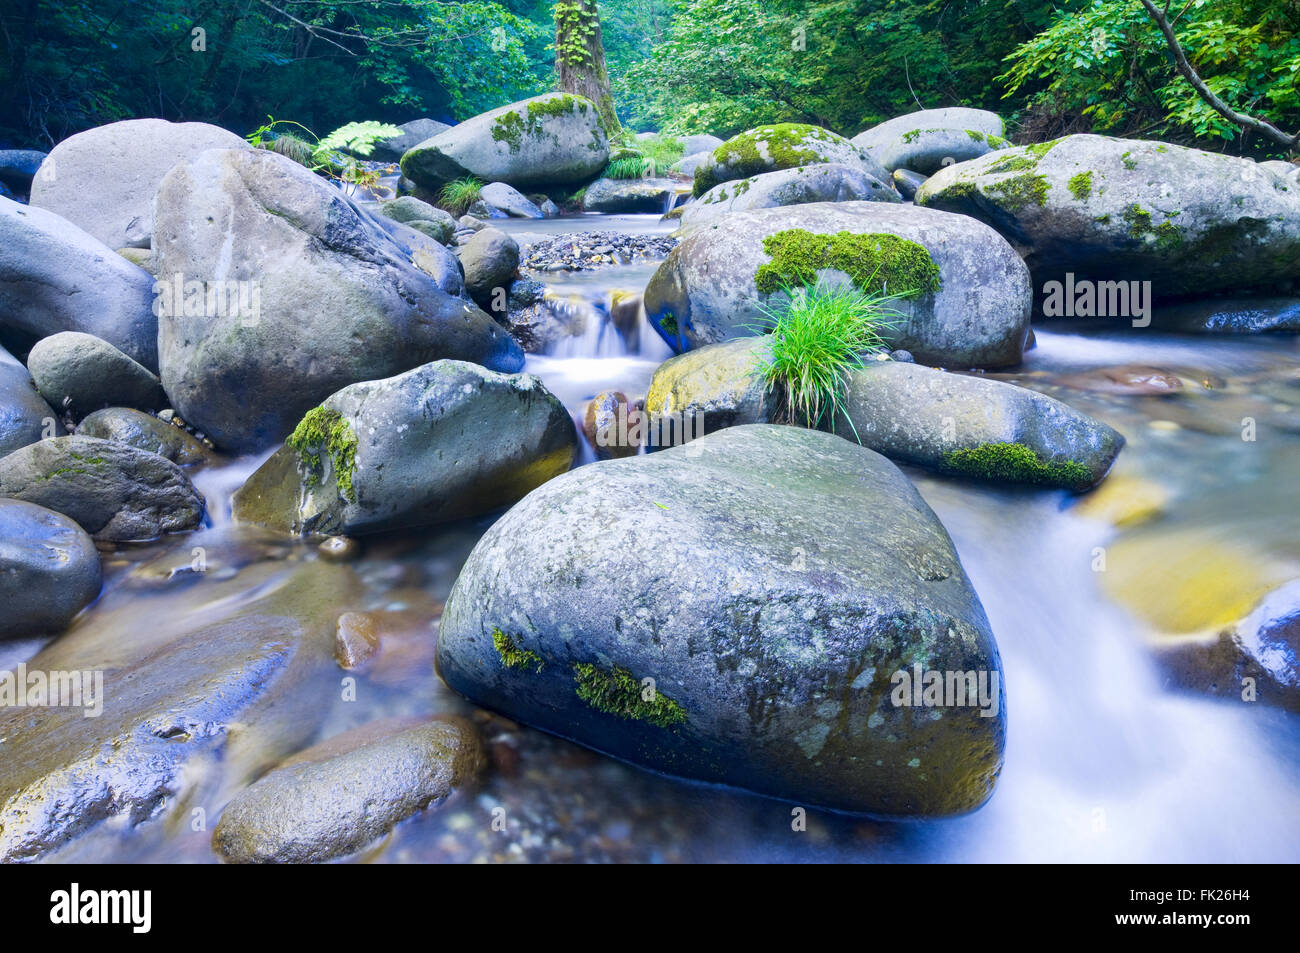 Detalle de la imagen del paisaje de rocas y piedras en un arroyo de montaña en el norte de Akita, Japón. Foto de stock